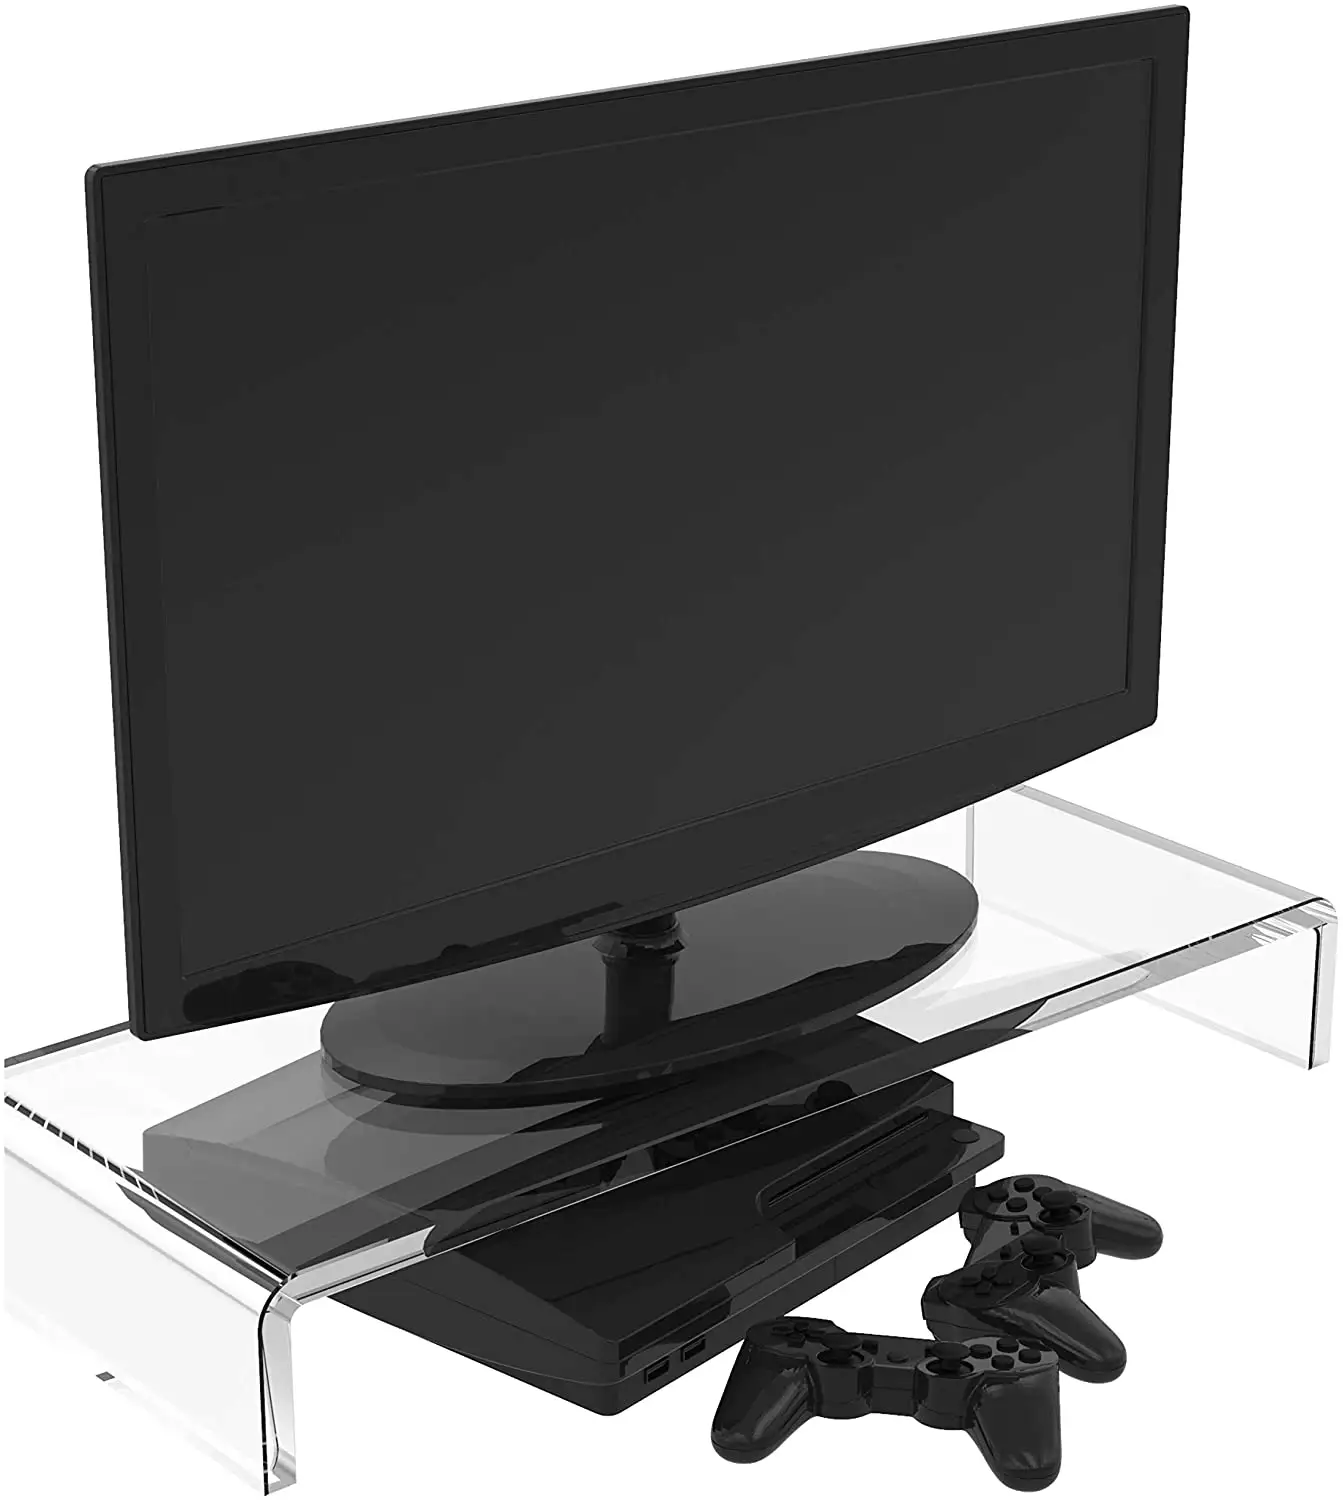 Support professionnel de moniteur sur pied, en acrylique acrylite, pour écran d'ordinateur portable, tablette, TV Lcd